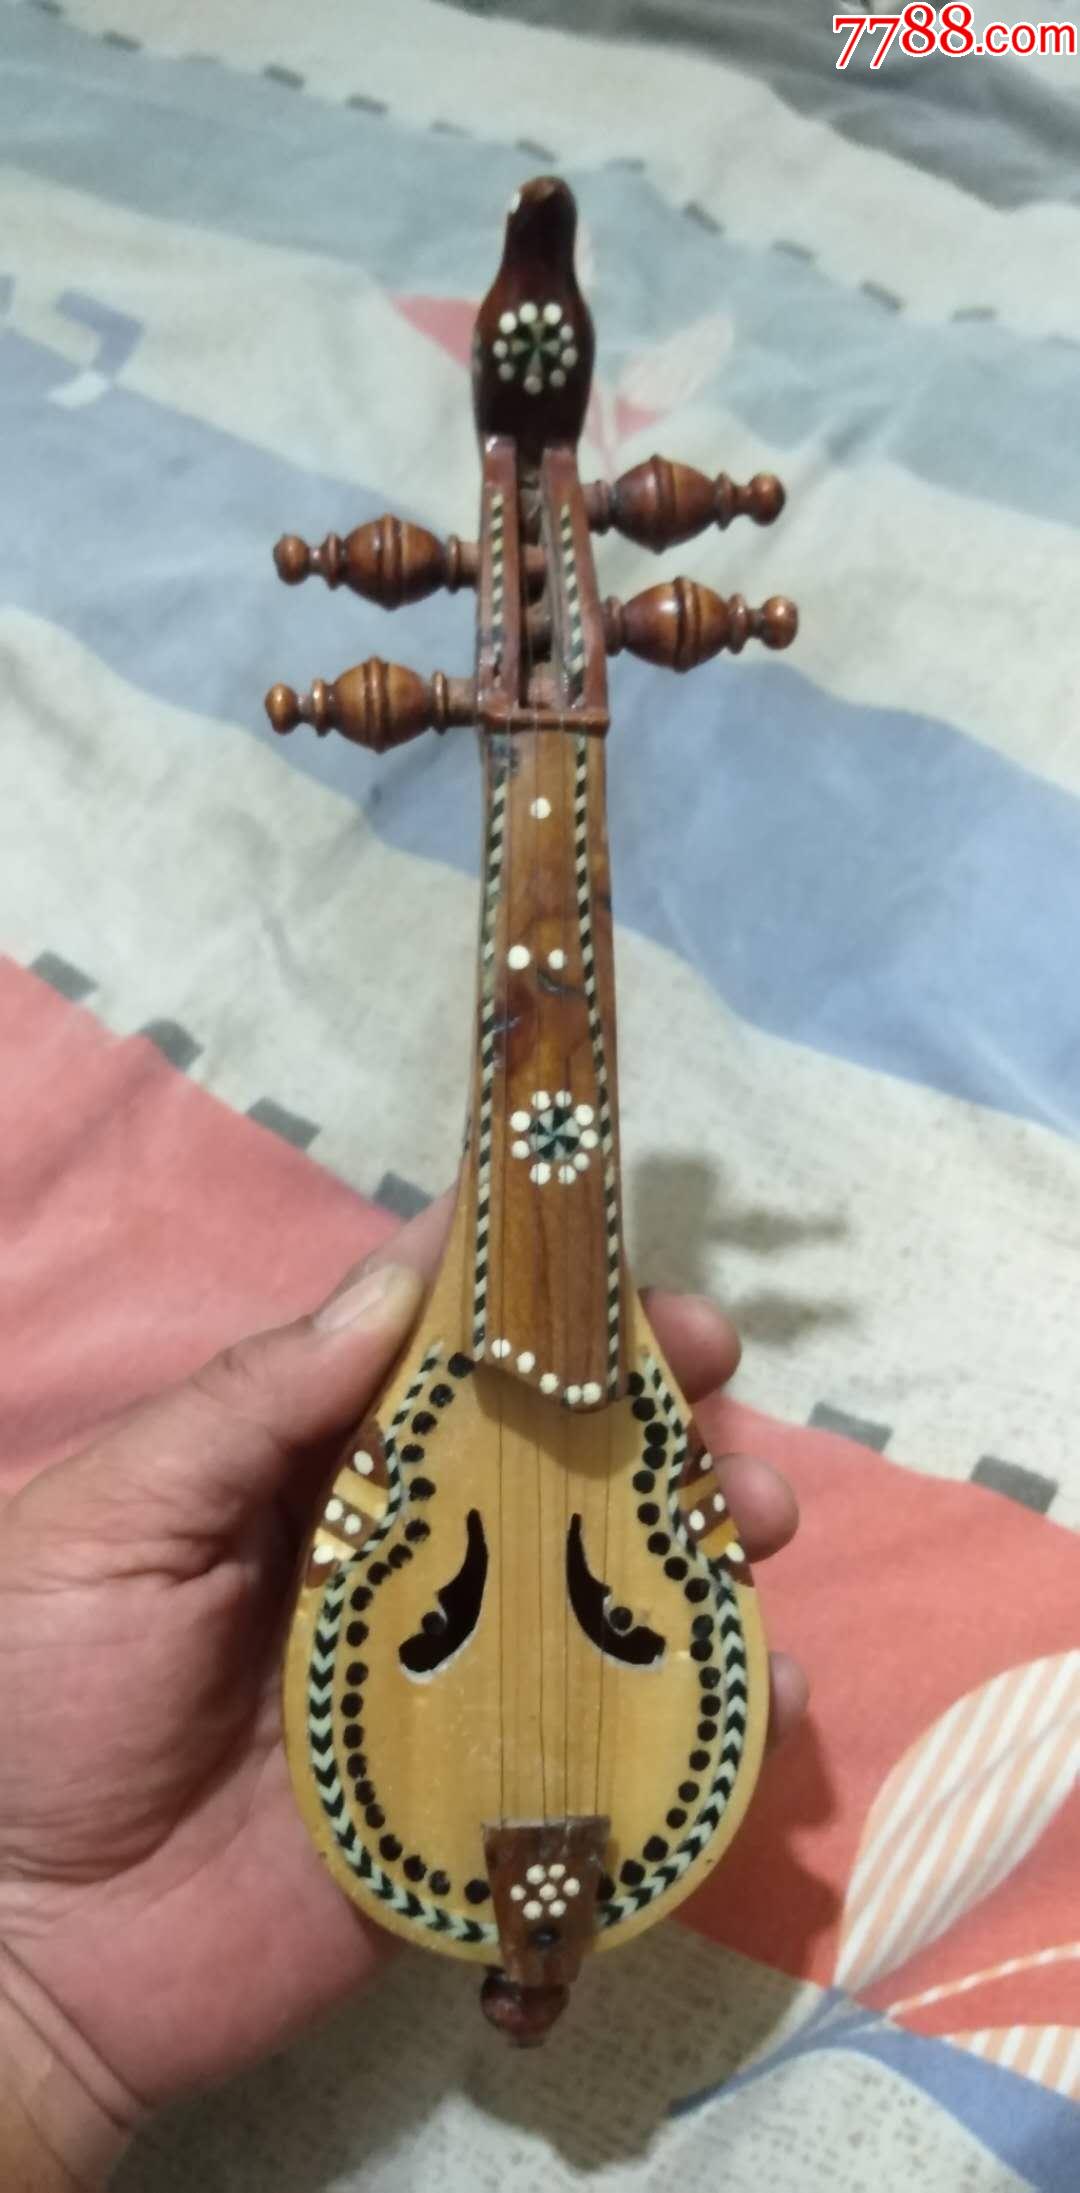 维吾尔族拉弦乐器胡西塔尔